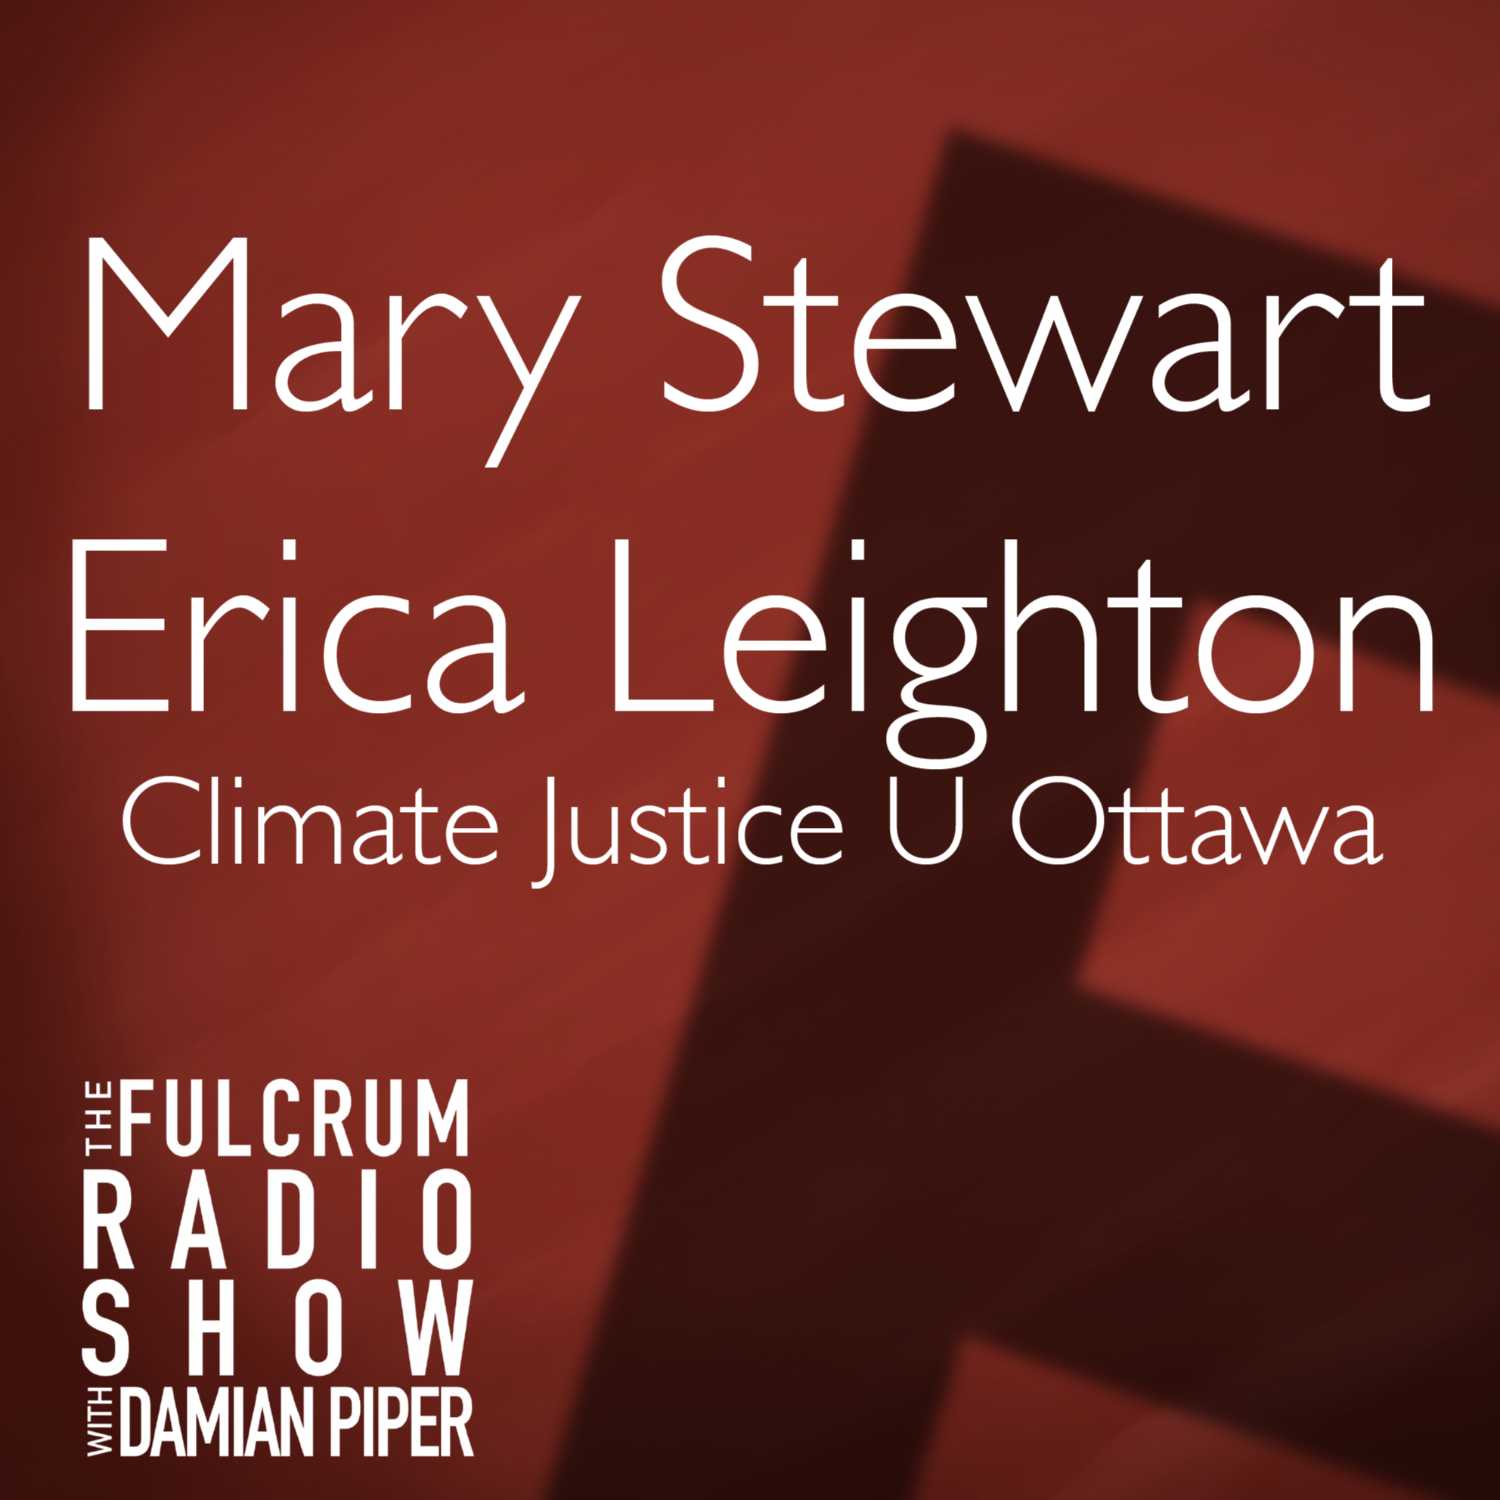 FULCRUM SPECIAL: Climate Justice U Ottawa